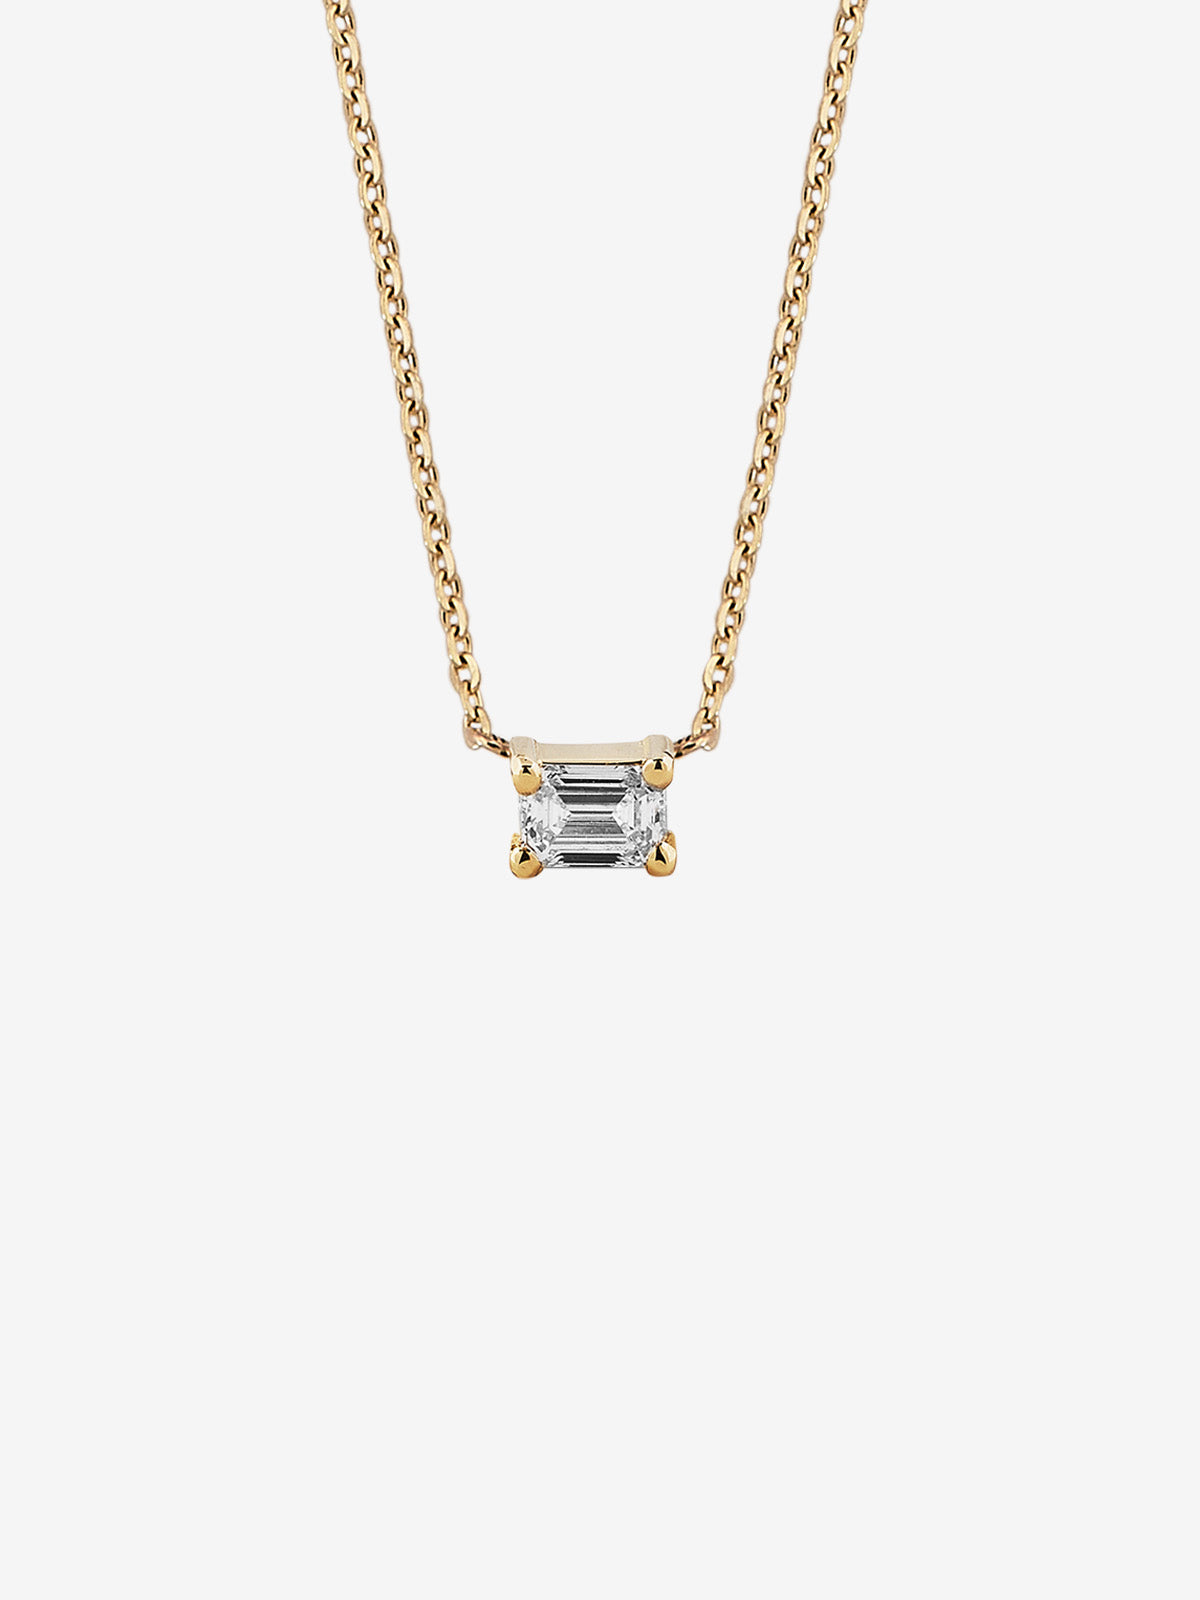 Emerald-Cut Diamond Necklace 0.10